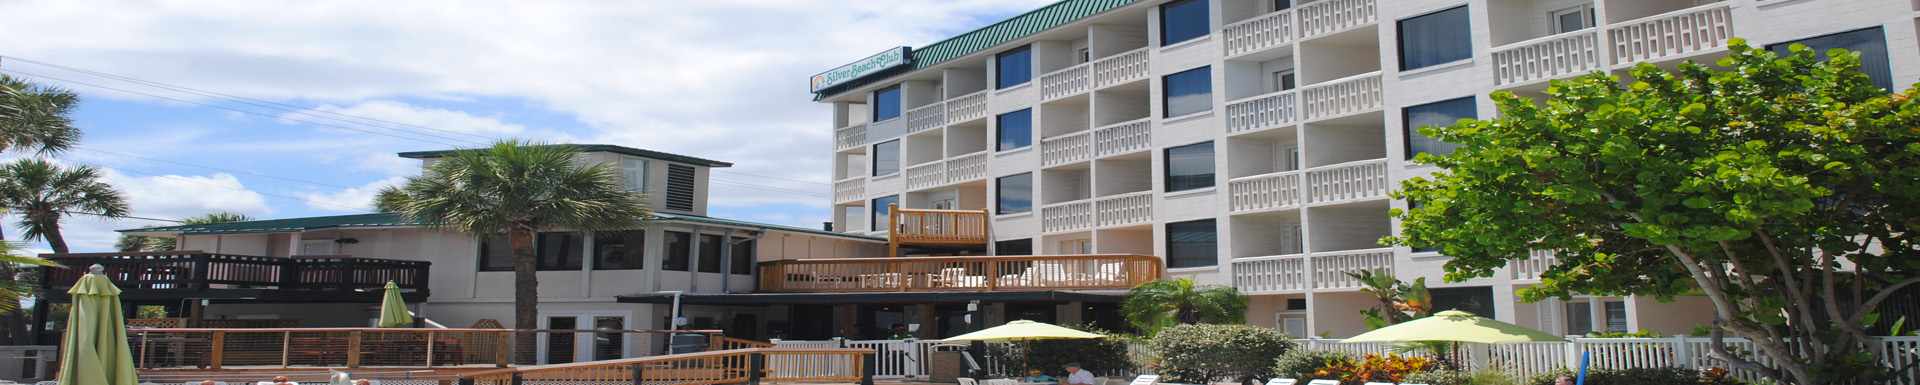 Silver Beach Club Resort